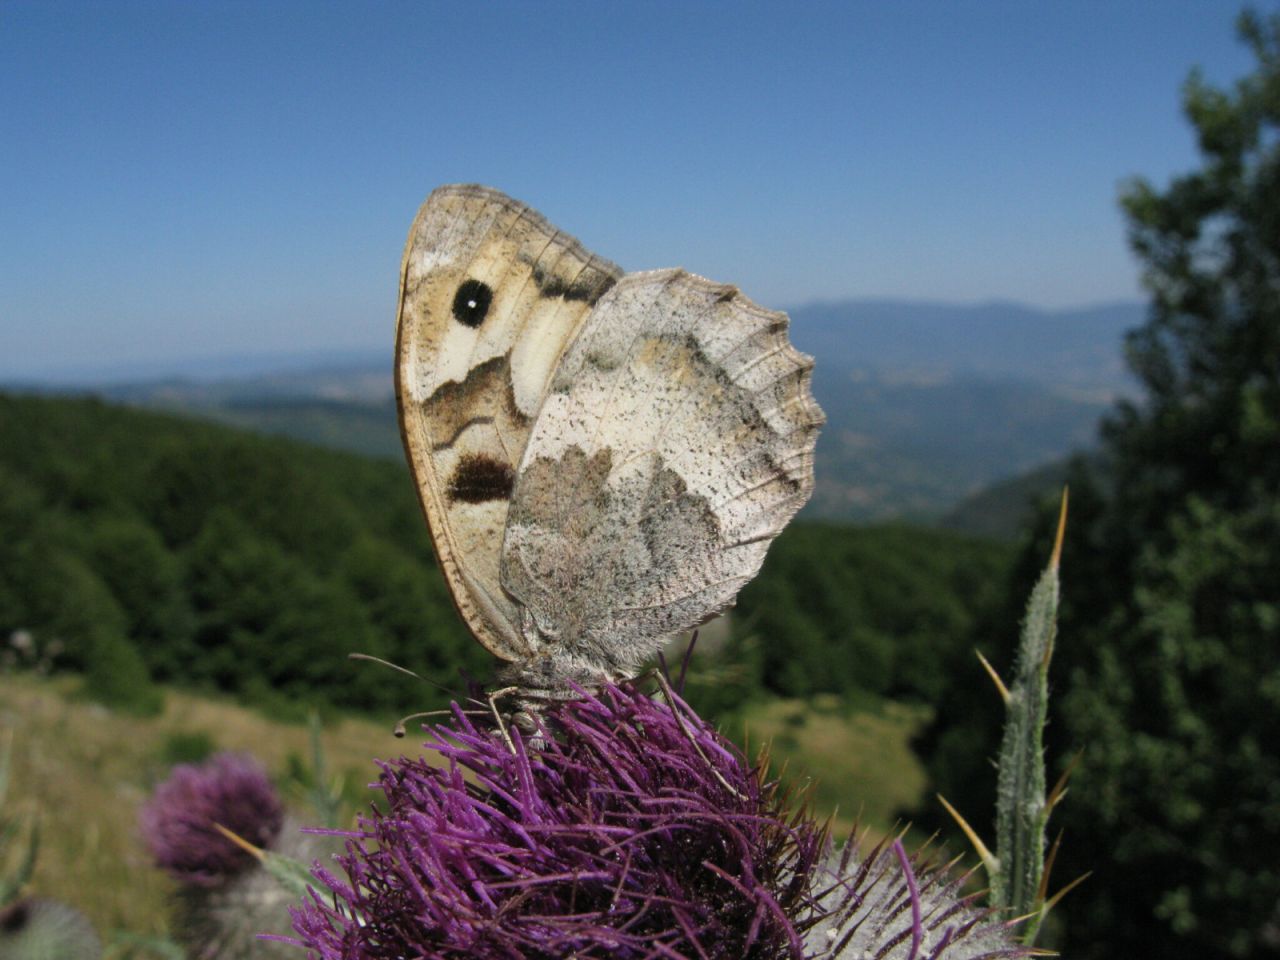 Una delle pochissime segnalazioni recenti di Chazara briseis per la Toscana (provincia di Arezzo, fabio1960). Fino a qualche decennio fa questa farfalla poteva essere osservata su svariate colline intorno a Firenze